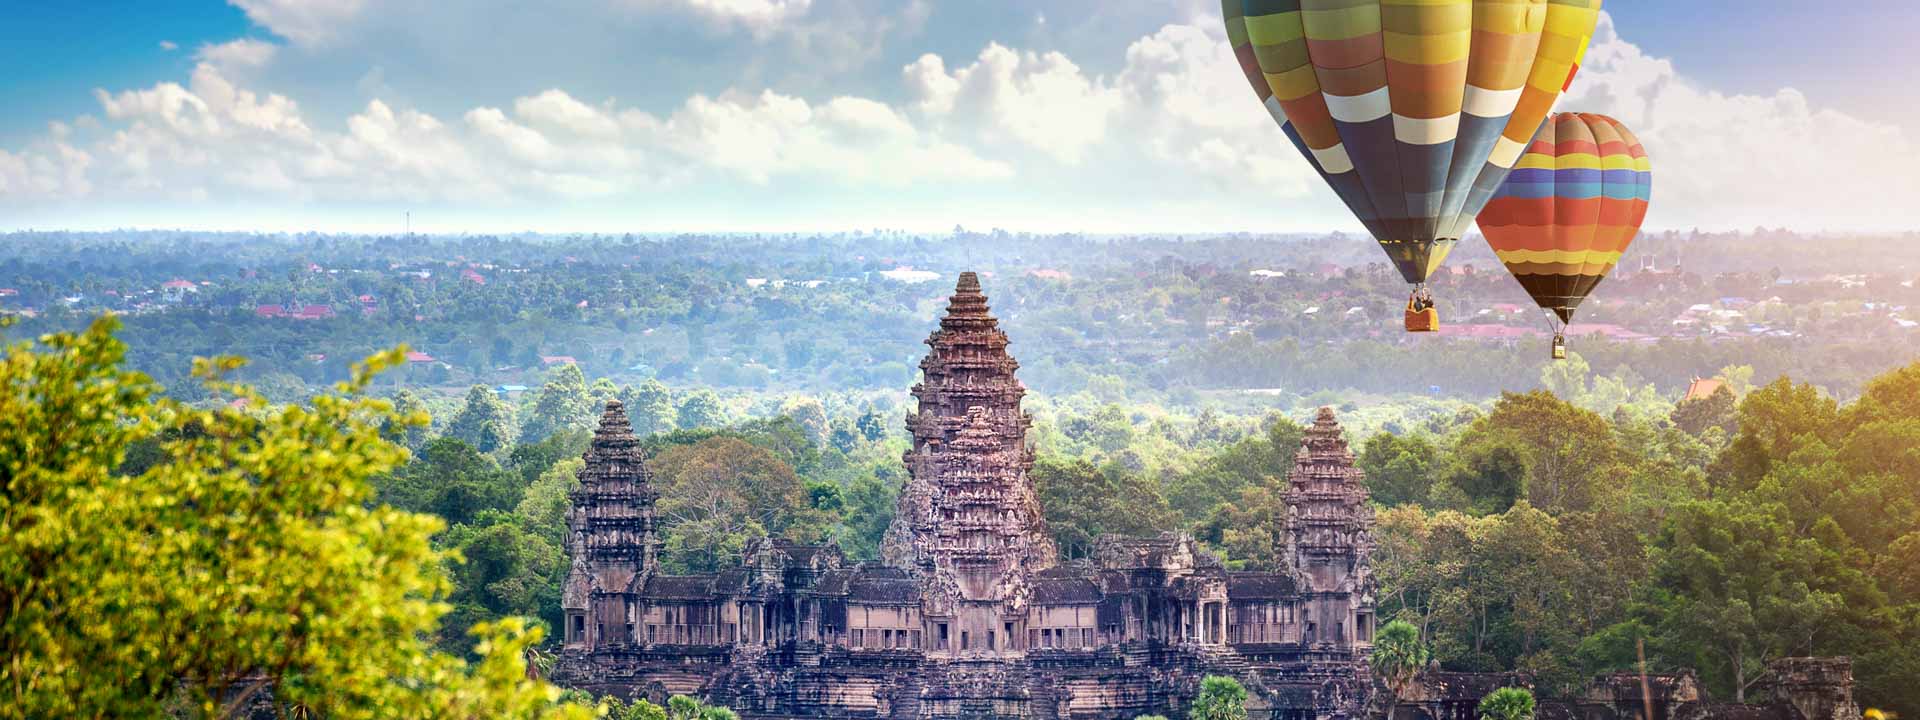 Templos de angkor 4 días